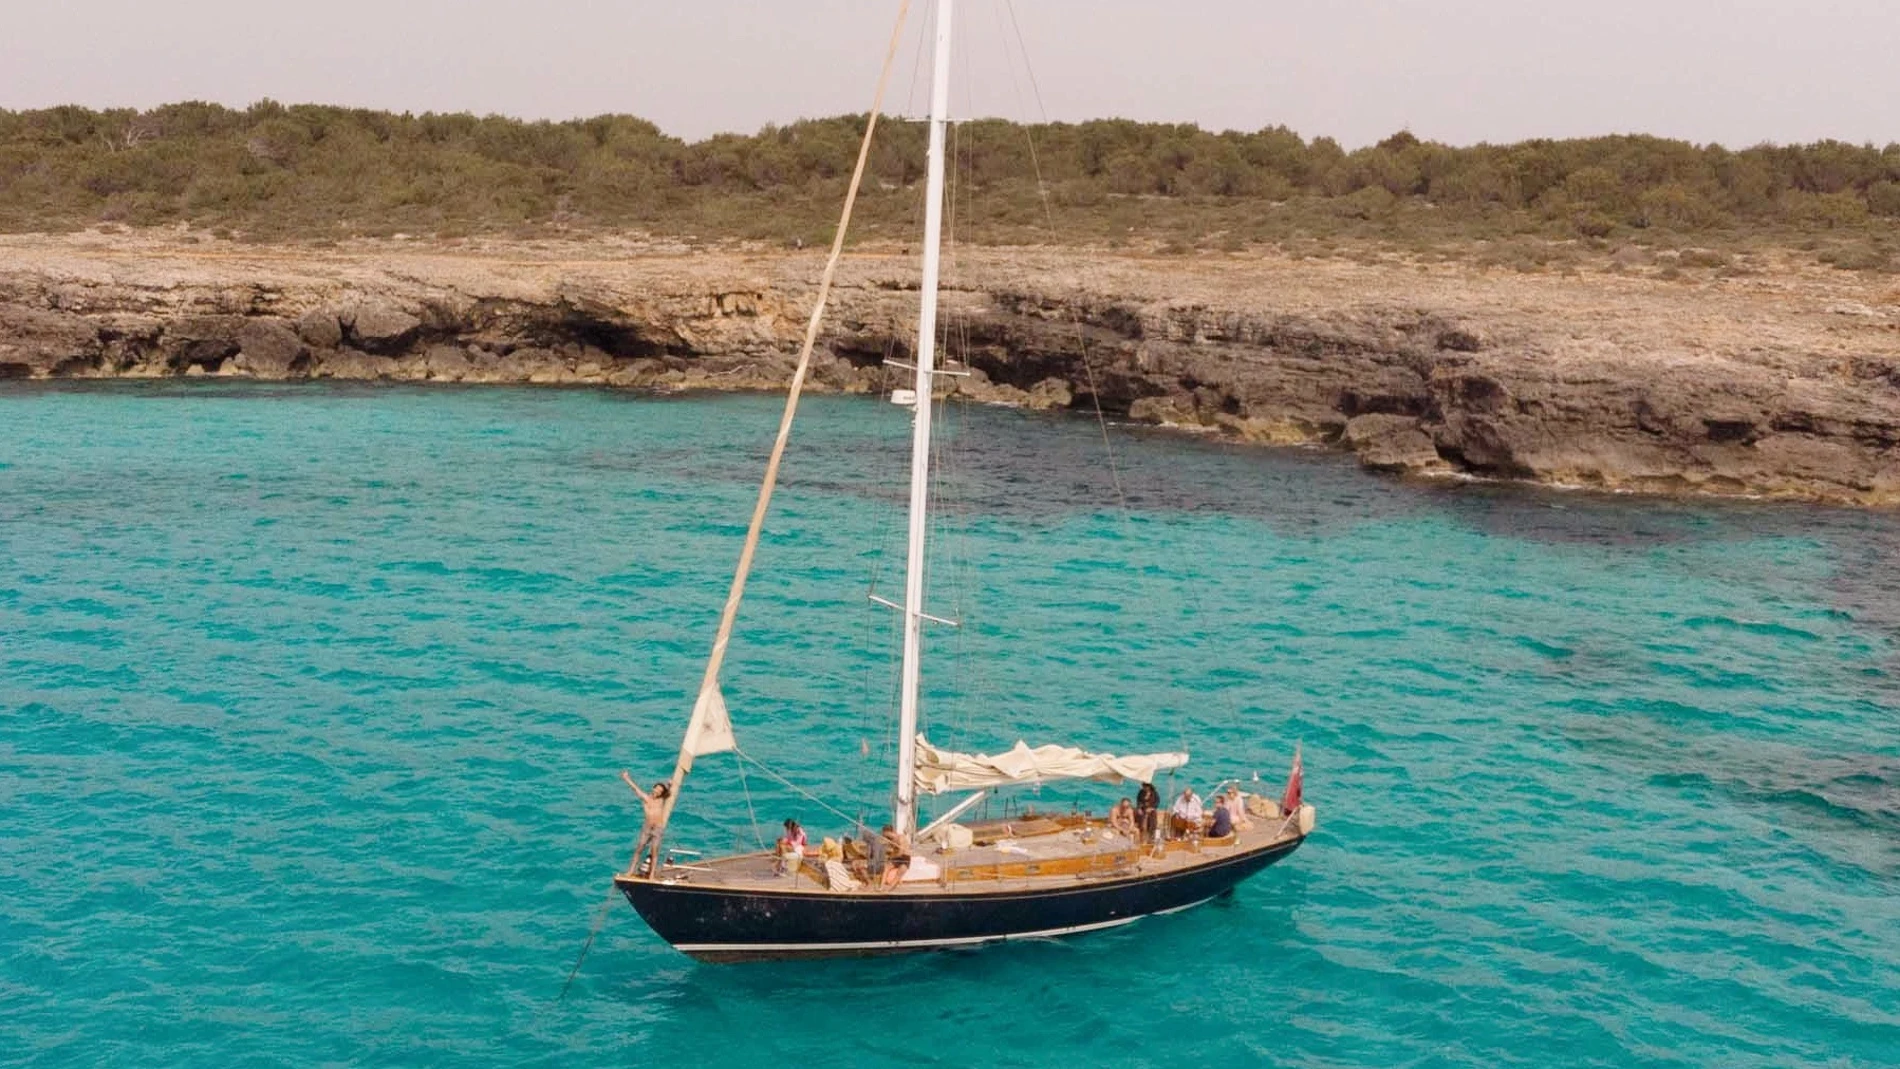 Excursión en barco desde Relais & Chateaux Faustino Gran, por las islas de Menorca